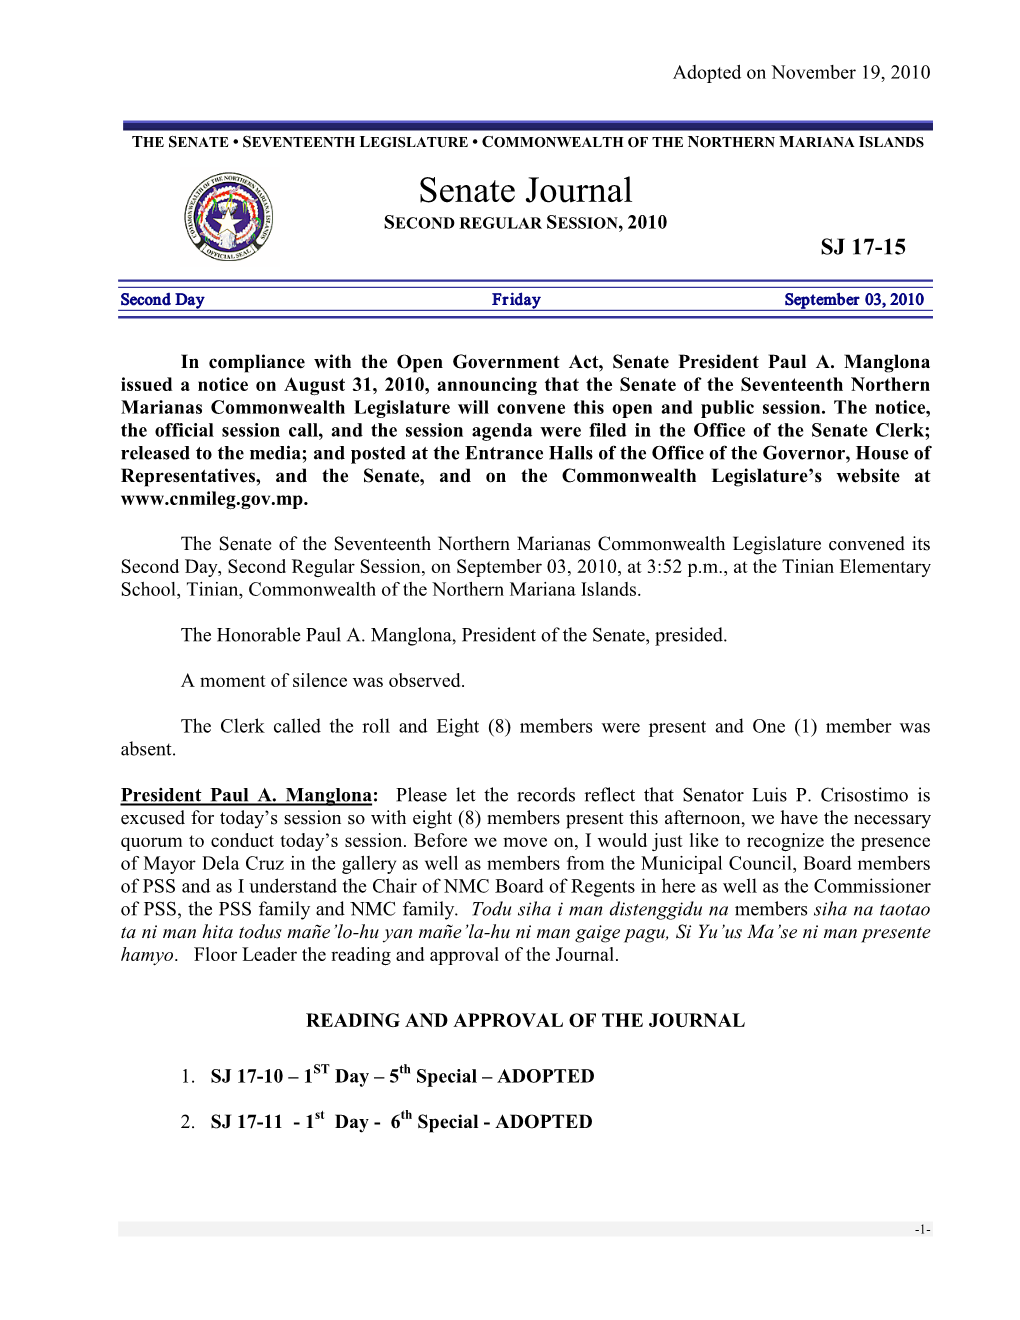 Senate Journal SECOND REGULAR SESSION, 2010 SJ 17-15